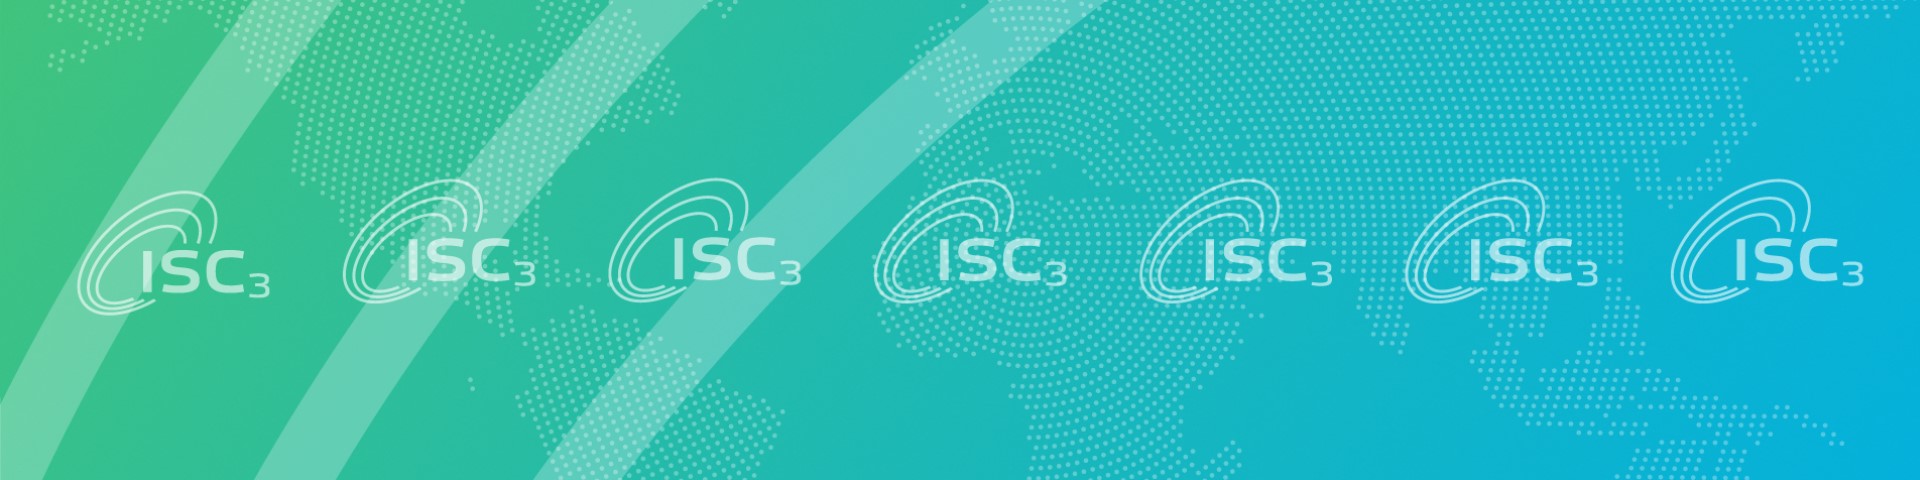 Mehrere Logos des Internationales Kompetenzzentrum für Nachhaltige Chemie vor einer Weltkarte.